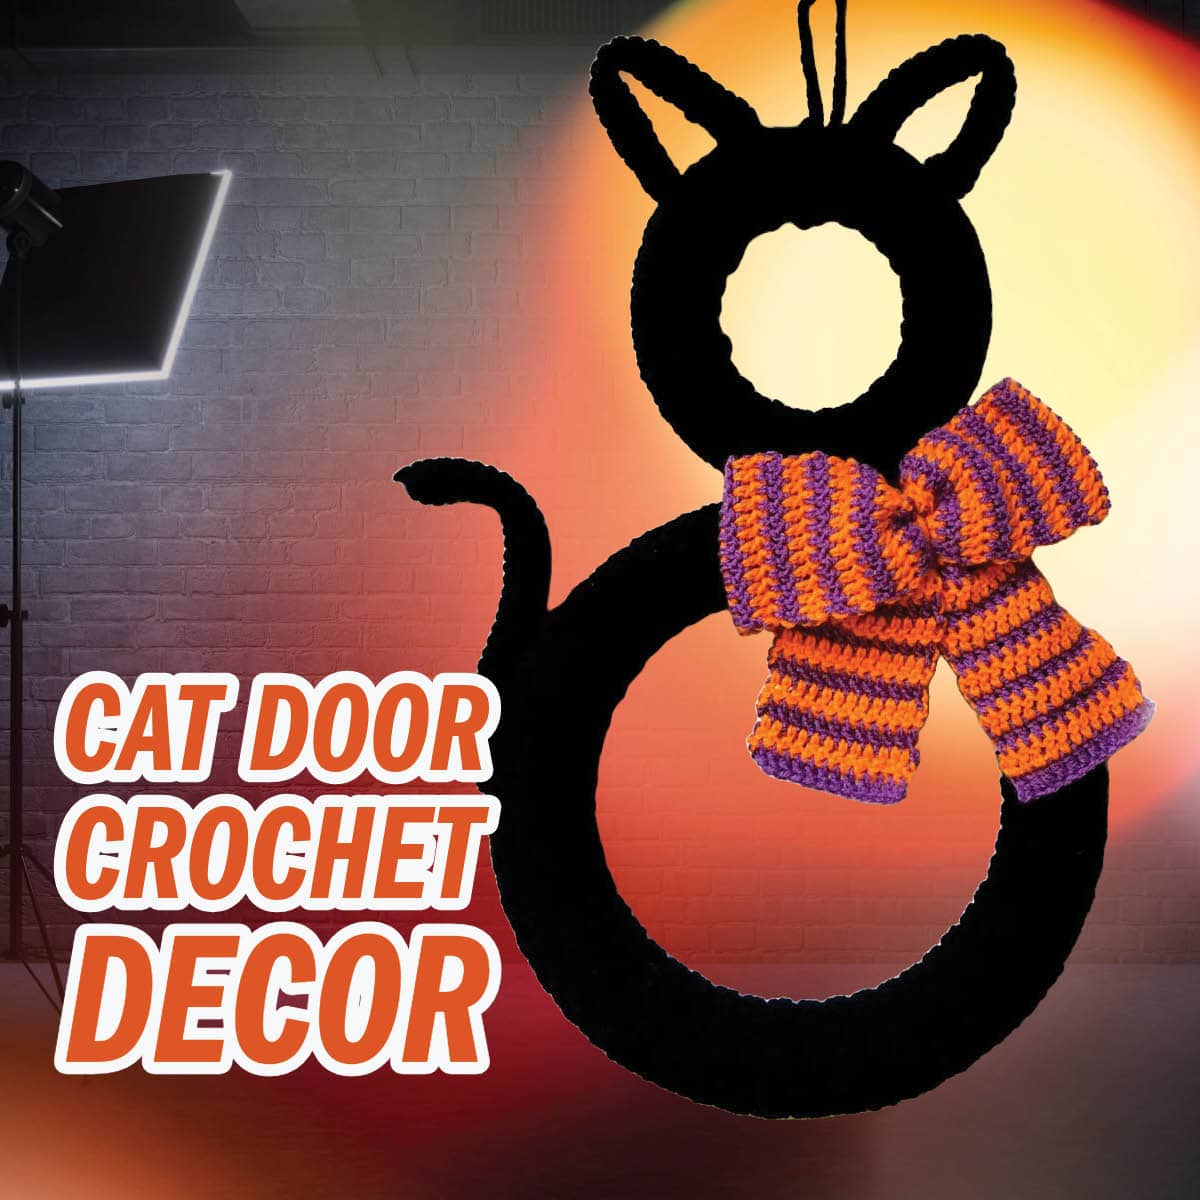 Crochet Cat Door Decor